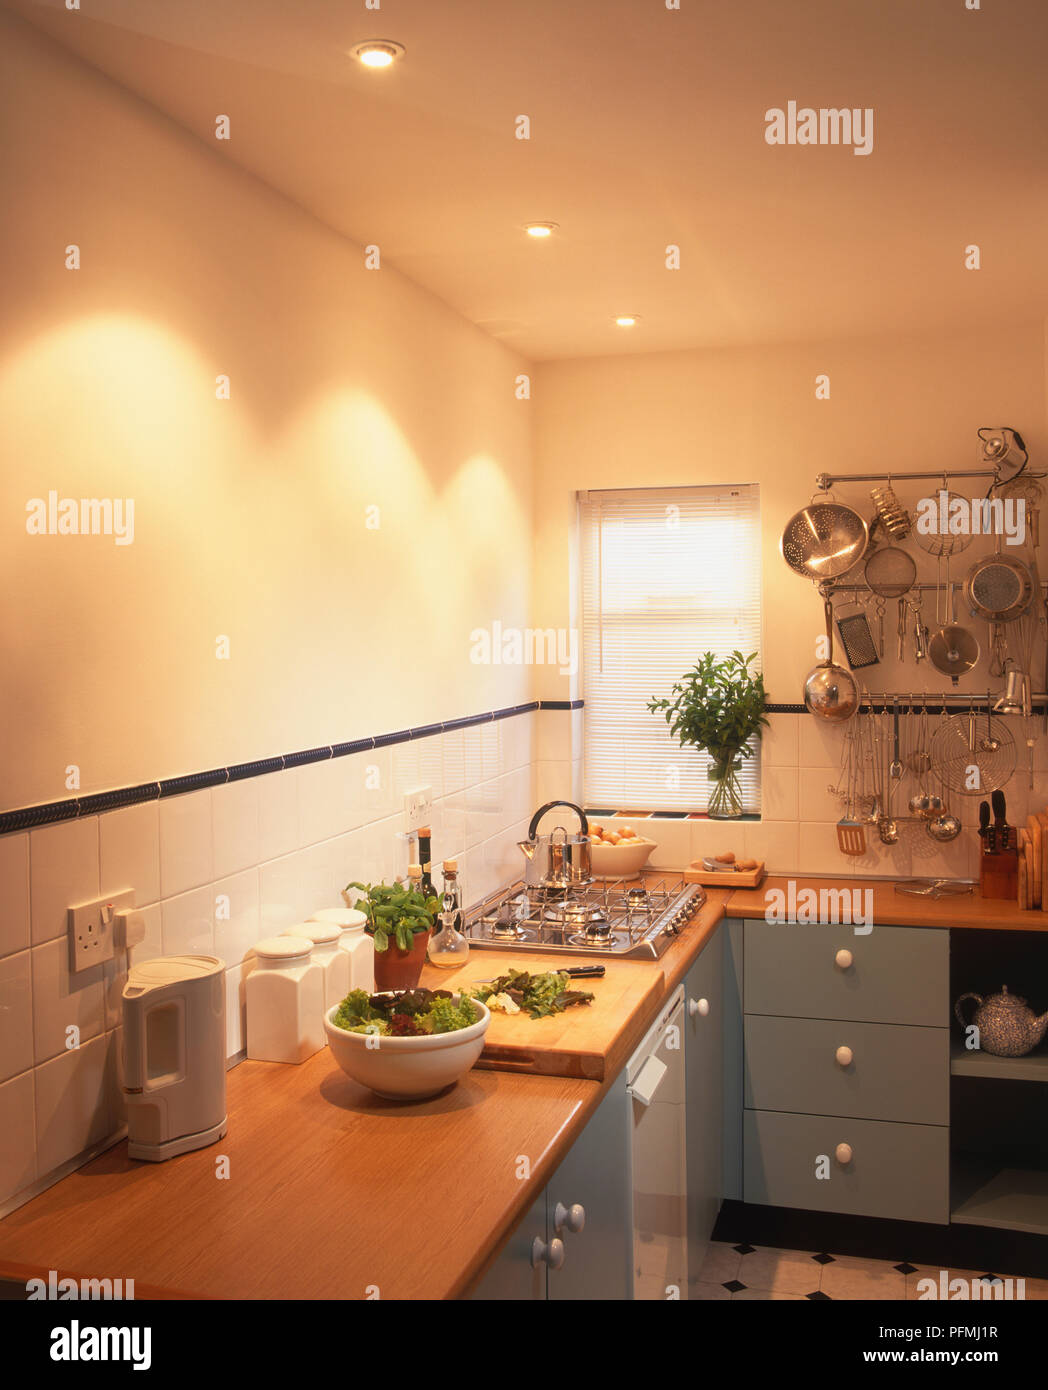 Decke Downlights über küchenarbeitsplatte Stockfotografie - Alamy